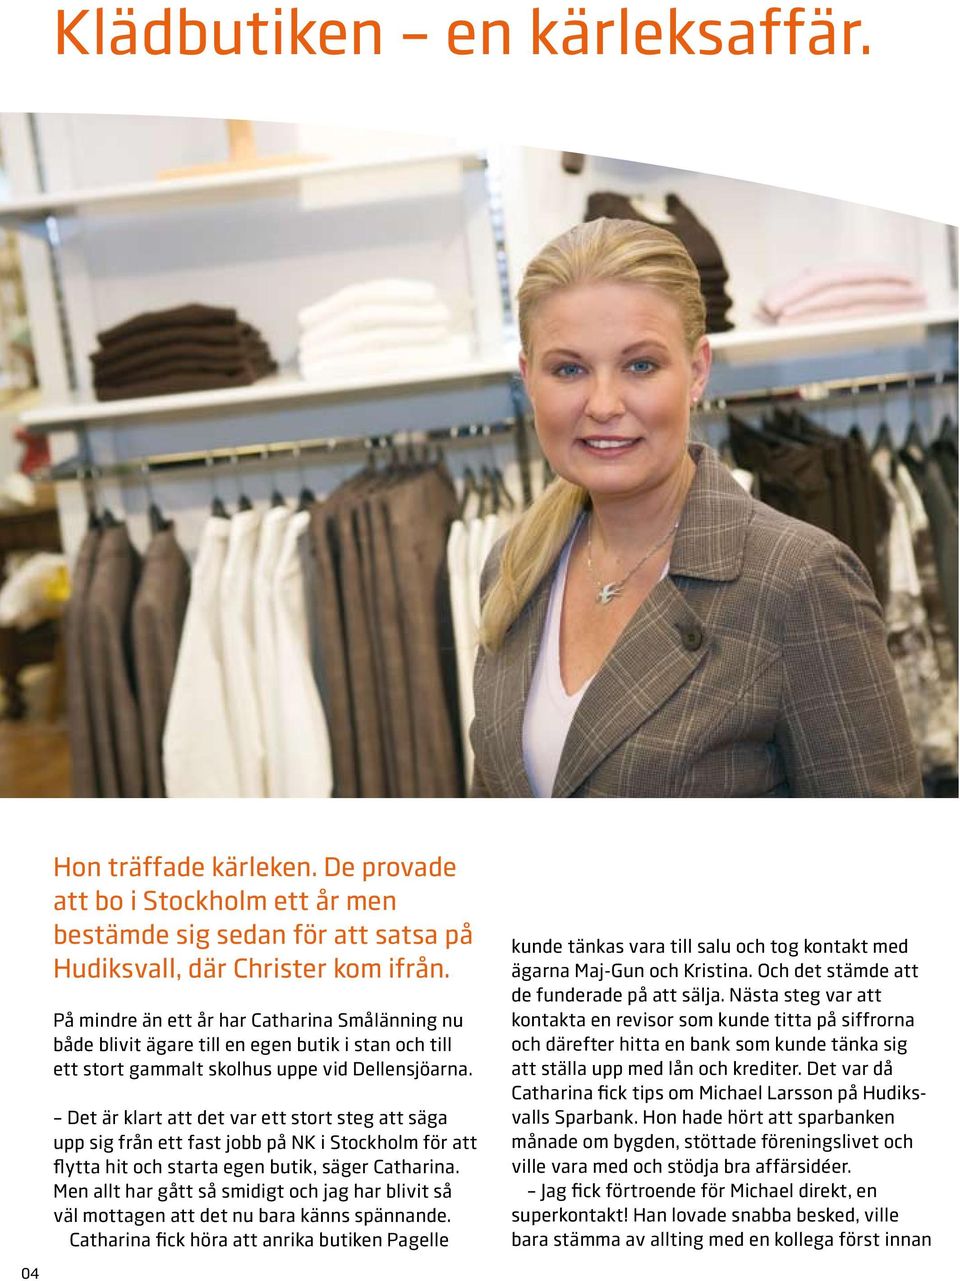 Det är klart att det var ett stort steg att säga upp sig från ett fast jobb på NK i Stockholm för att flytta hit och starta egen butik, säger Catharina.